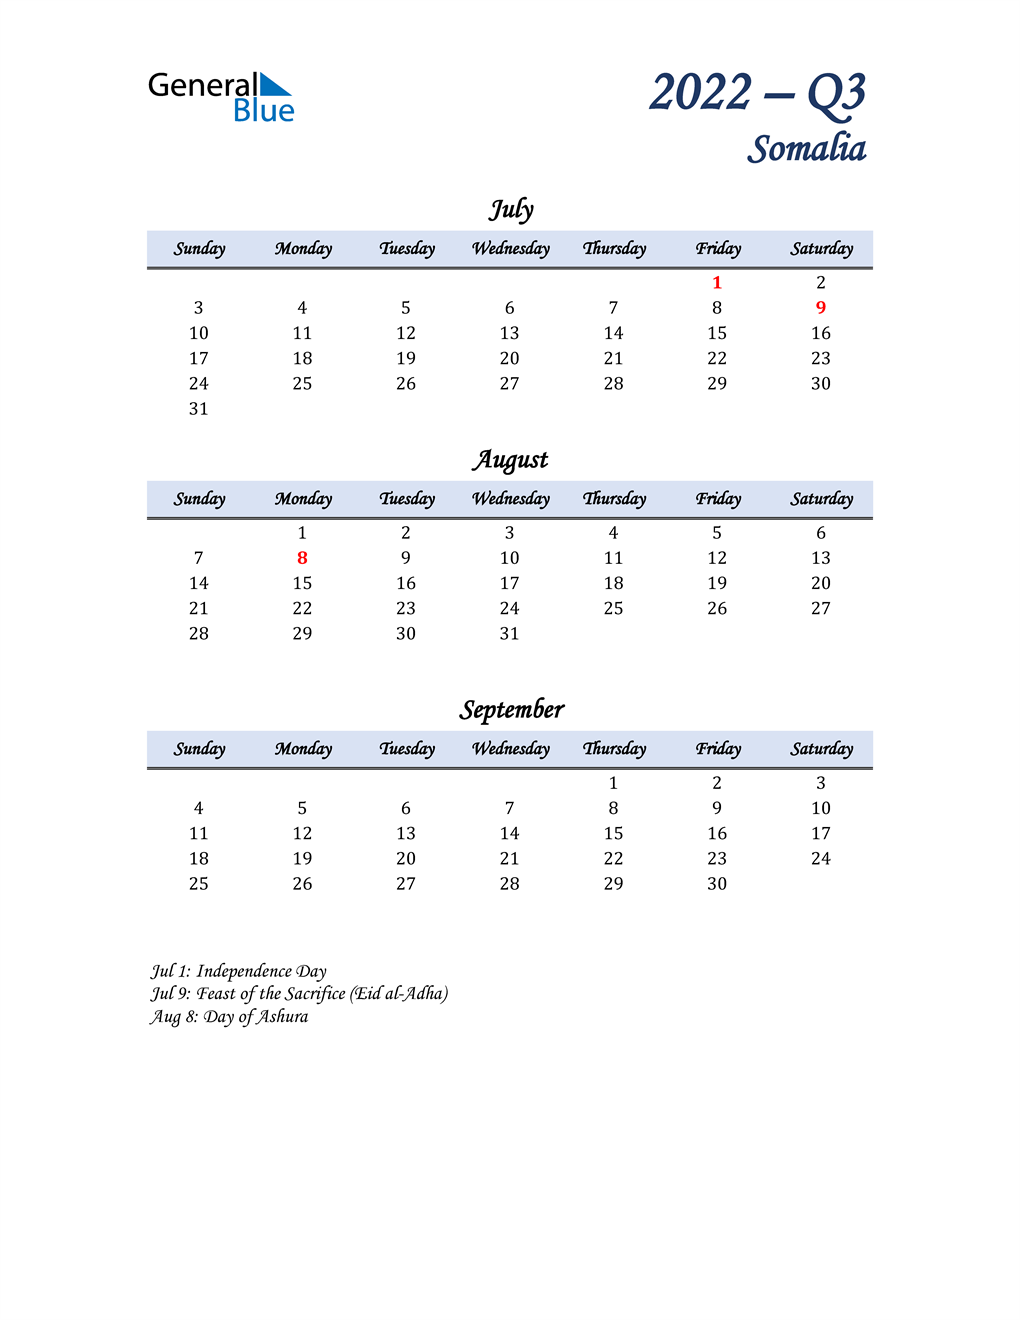  July, August, and September Calendar for Somalia